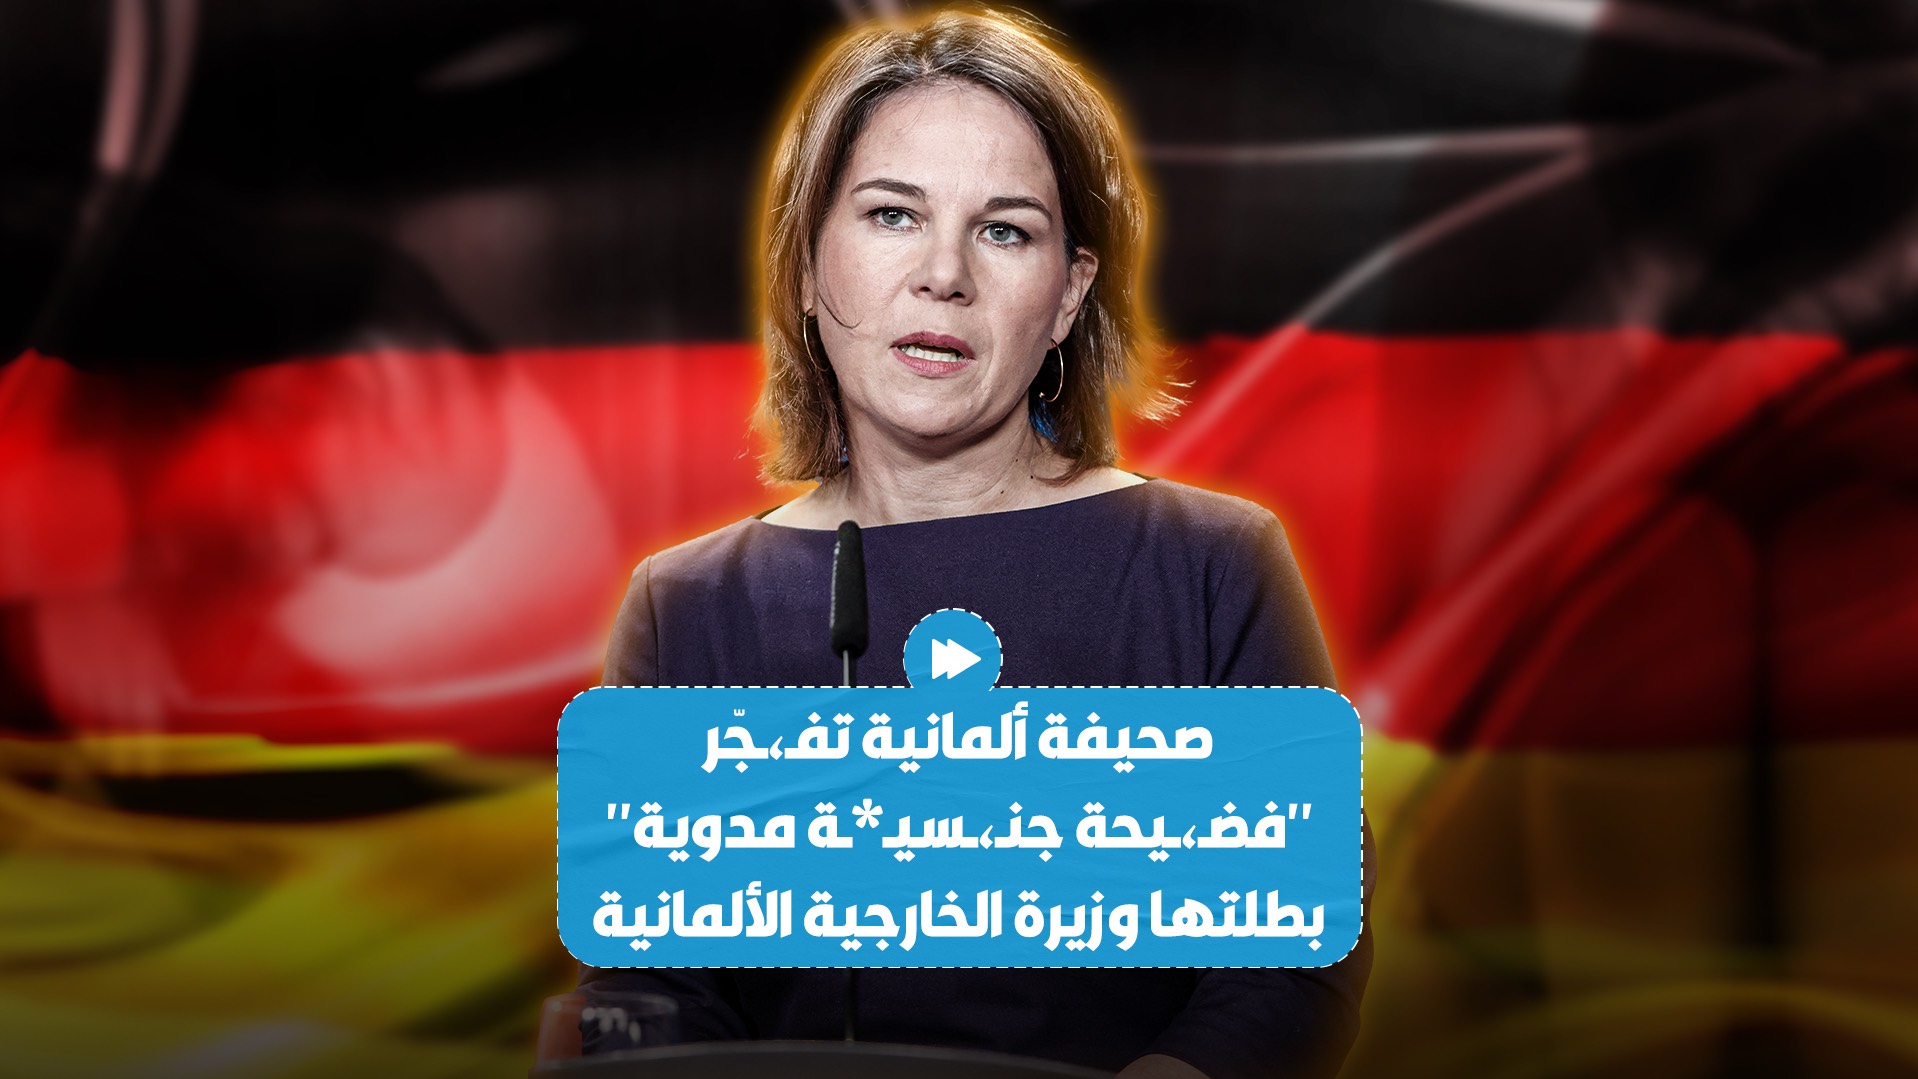 صحيفة ألمانية تكشف عن "فضـ،ـيحة جنـ،ـسيـ*ـة مدوية" بطلتها وزيرة الخارجية الألمانية أنالينا بيربوك!